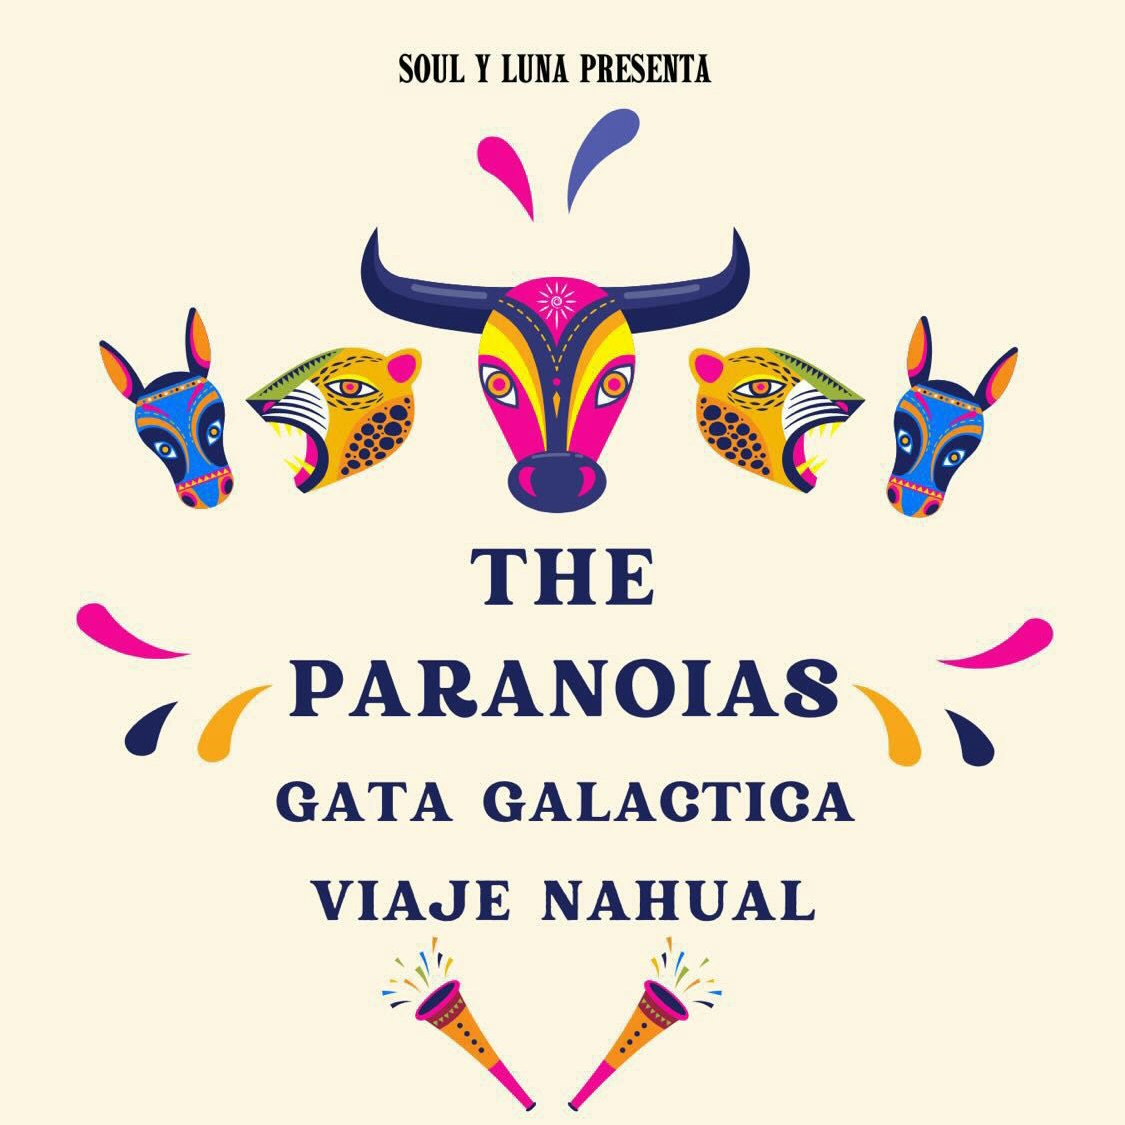 The Paranoias, Gata Galactica, Viaje Nahual